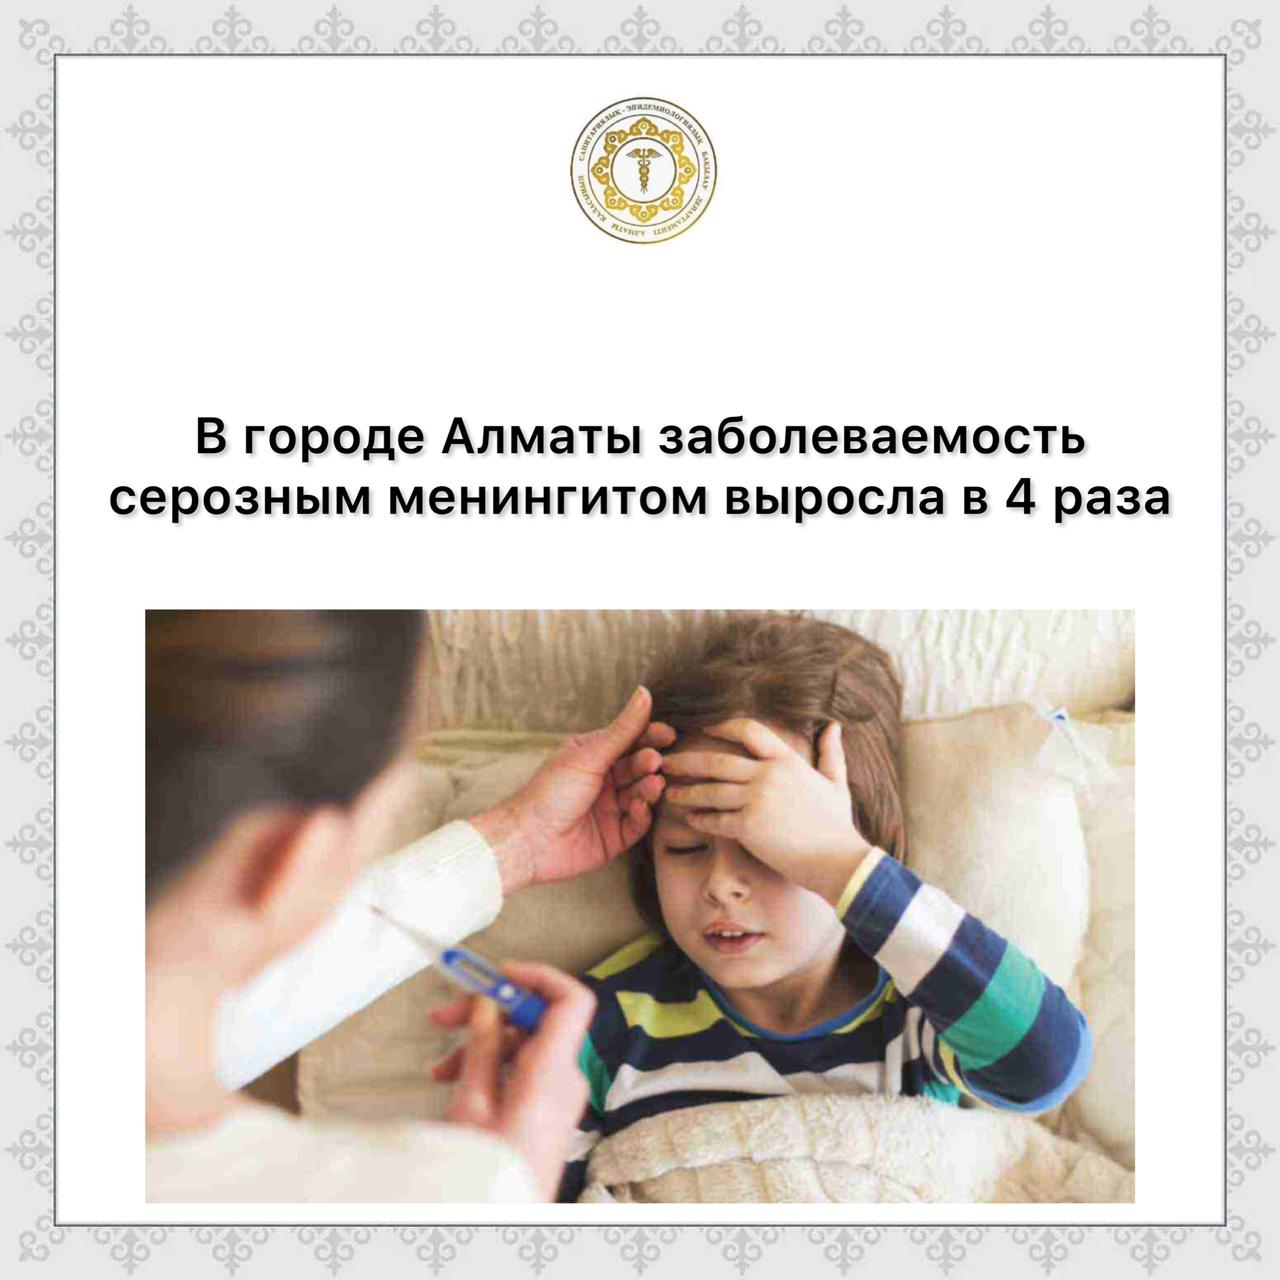 В городе Алматы заболеваемость серозным менингитом выросла в 4 раза